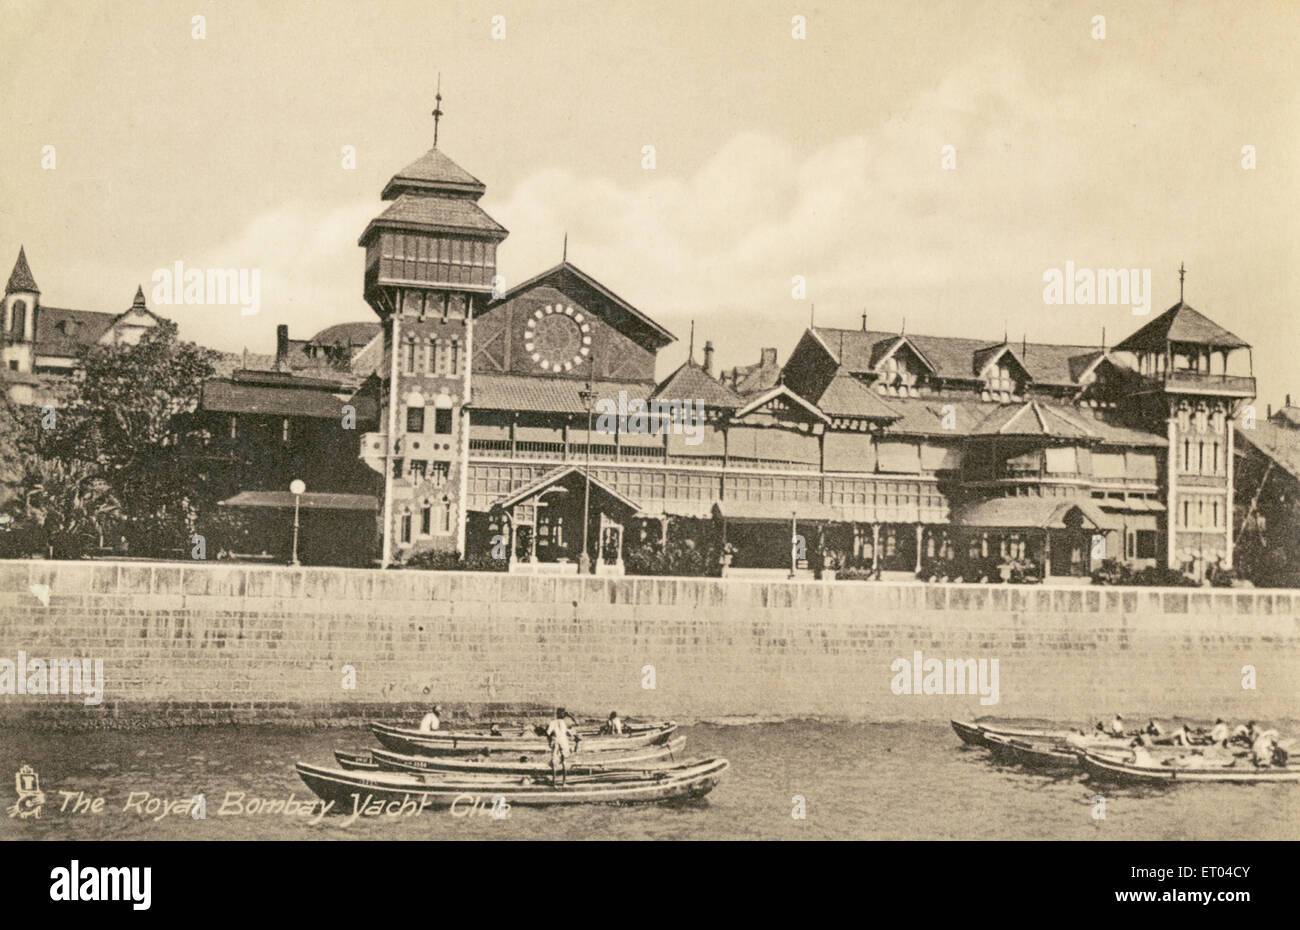 Alte vintage 1900s Royal bombay Yacht Club rbyc, Bombay, Mumbai, Maharashtra, Indien - jsa 151358 Stockfoto